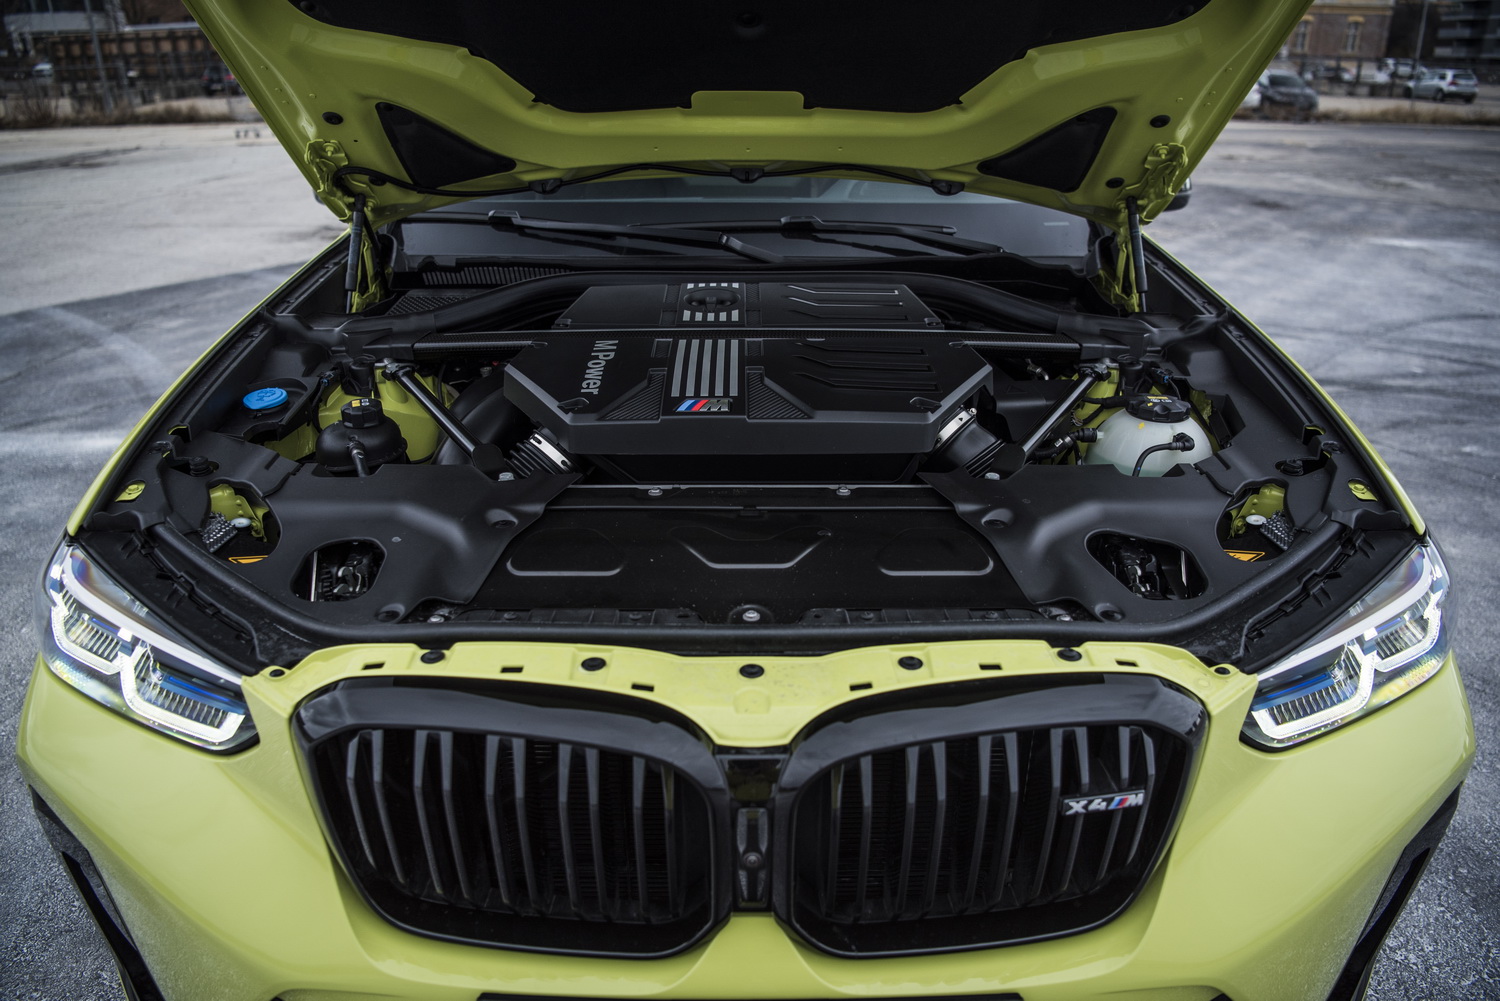 Die Motorhaube eines gelben BMW X4 M ist geöffnet und gibt den Blick frei auf den Reihensechszylinder.